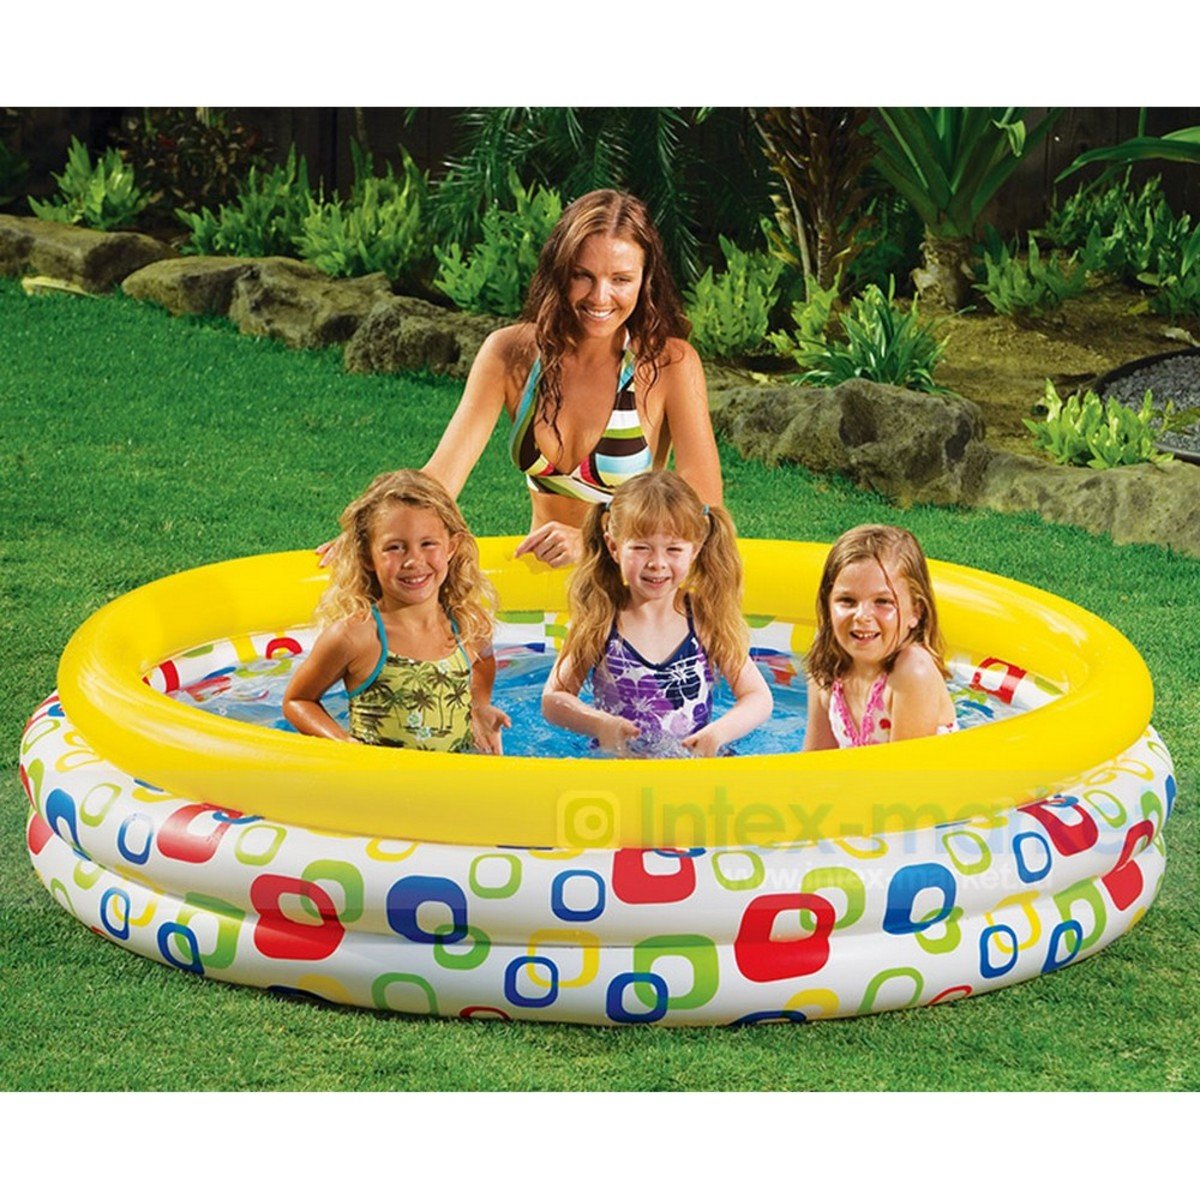 Intex Jungle Fun Pool